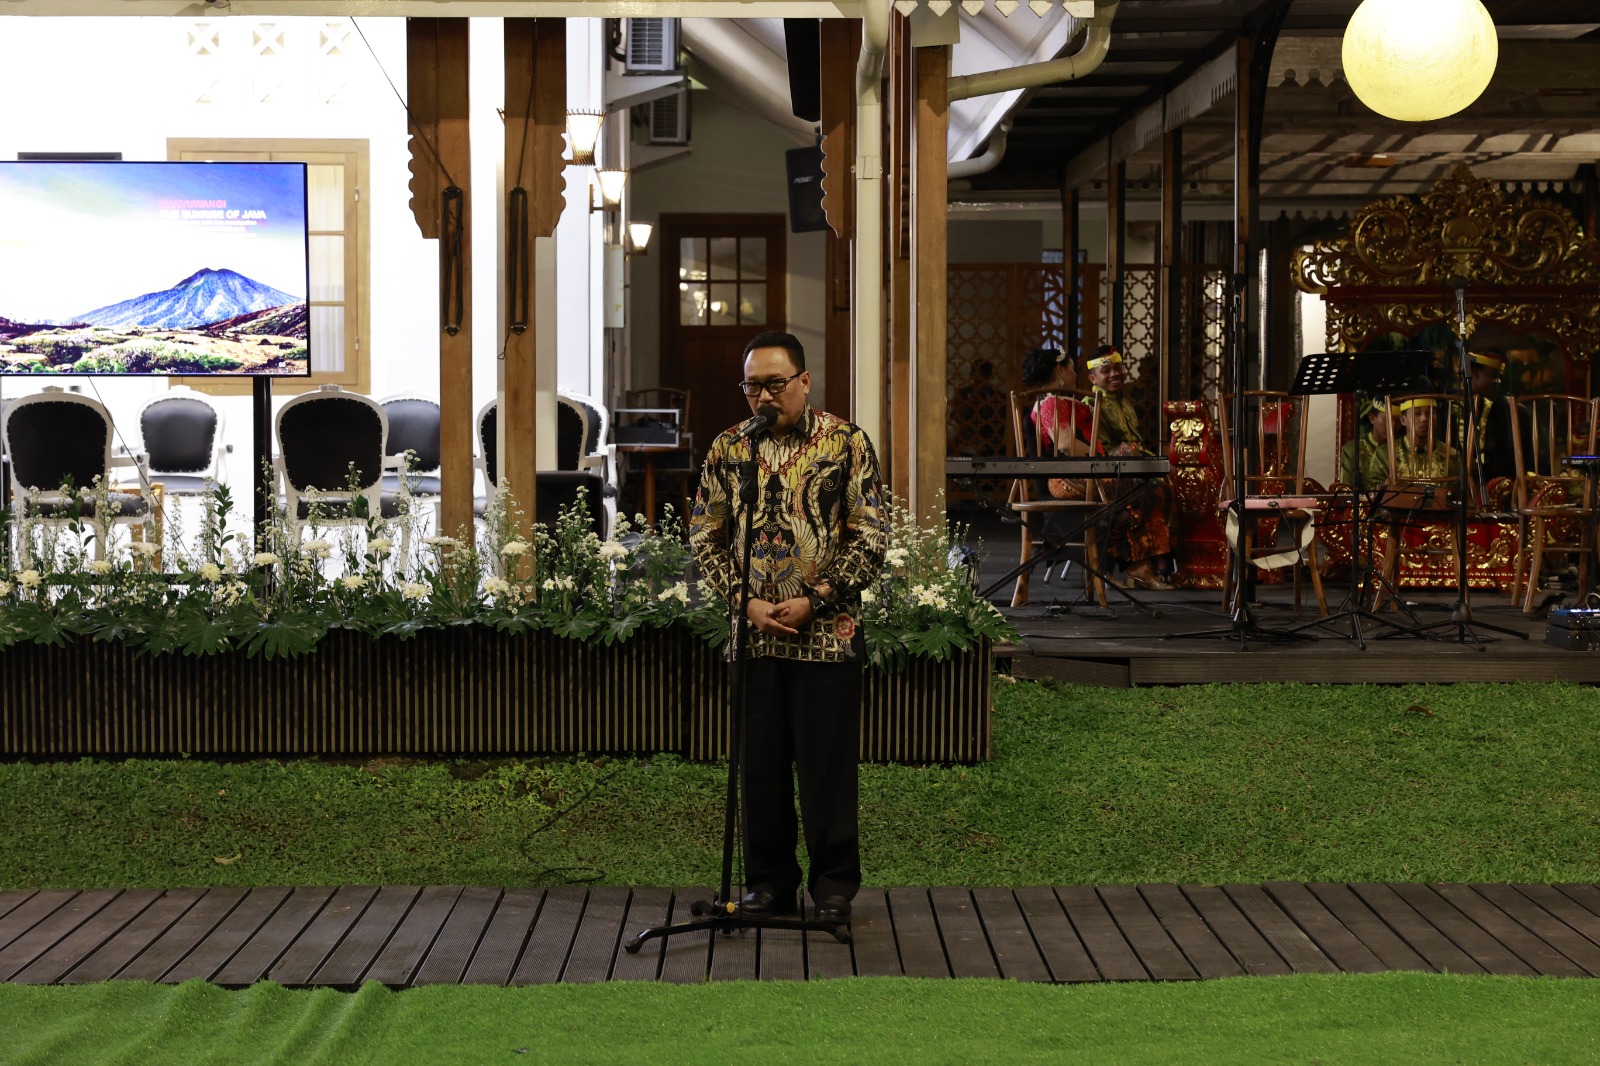 ANRI Berikan Penghargaan Tokoh Kepemimpinan Kearsipan kepada Gubernur Jawa Timur